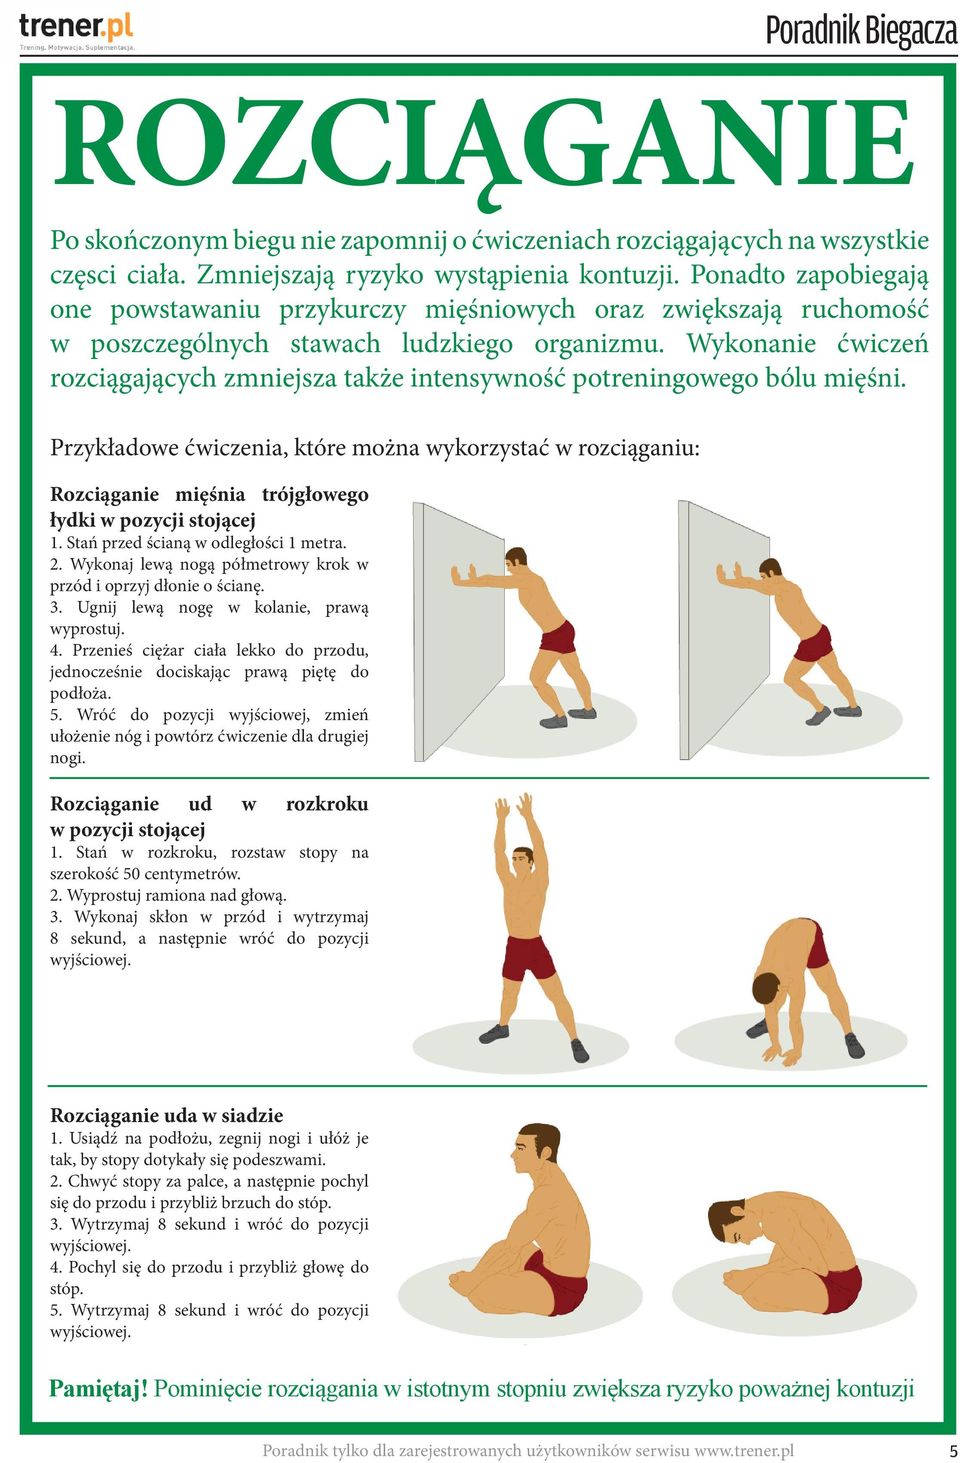 Wykonanie ćwiczeń rozciągających zmniejsza także intensywność potreningowego bólu mięśni.